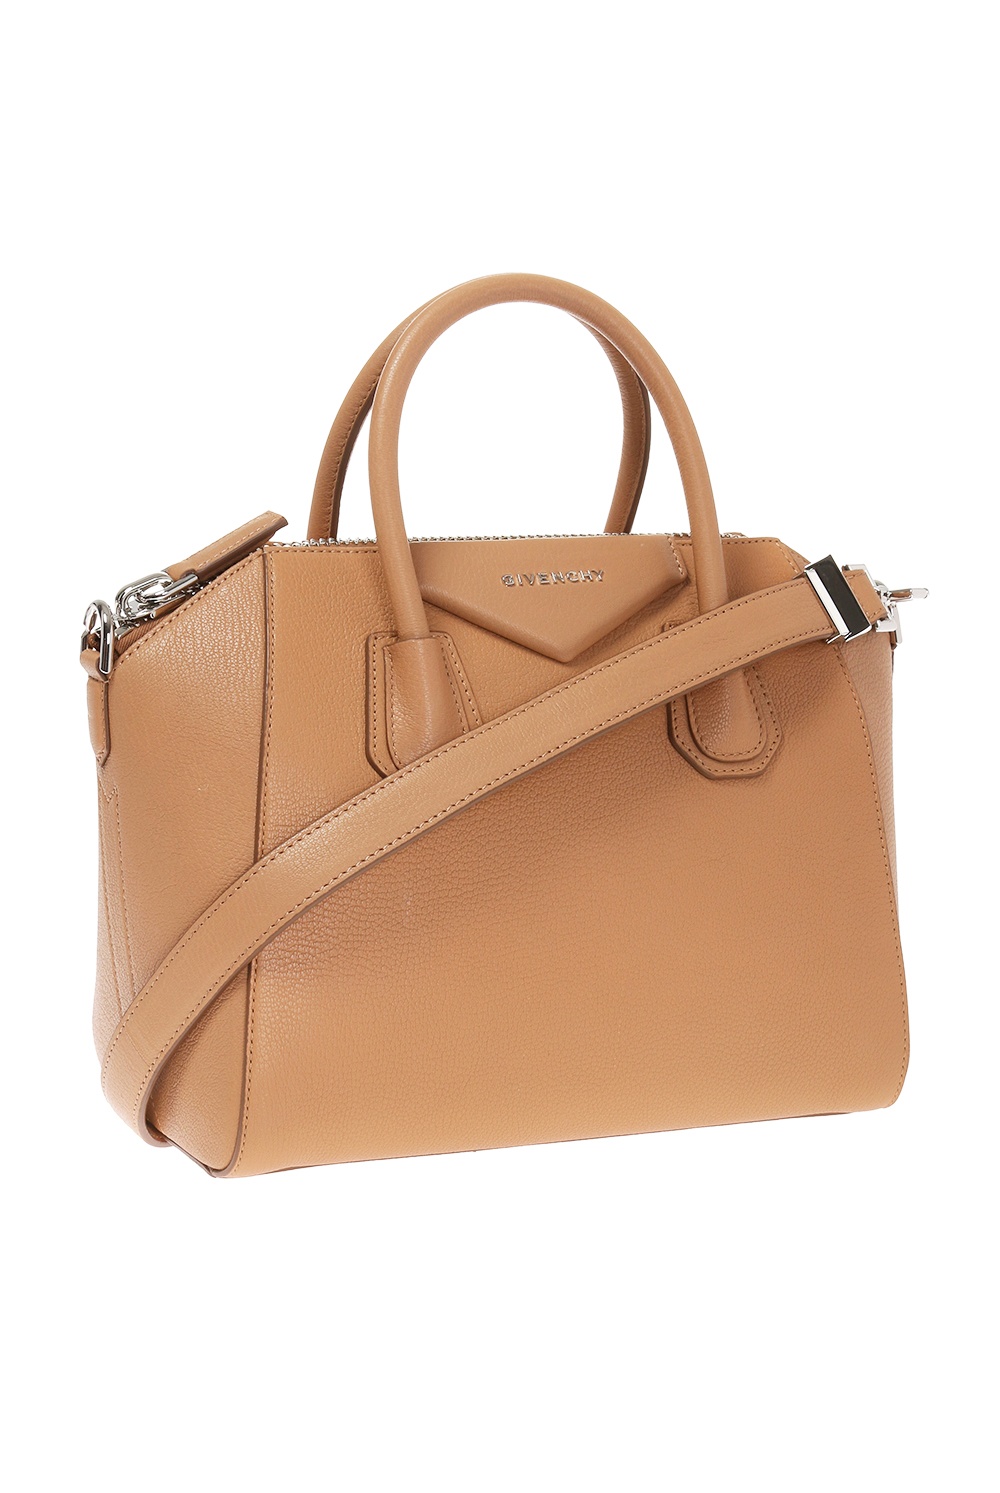 Givenchy 'Antigona Medium' shoulder bag